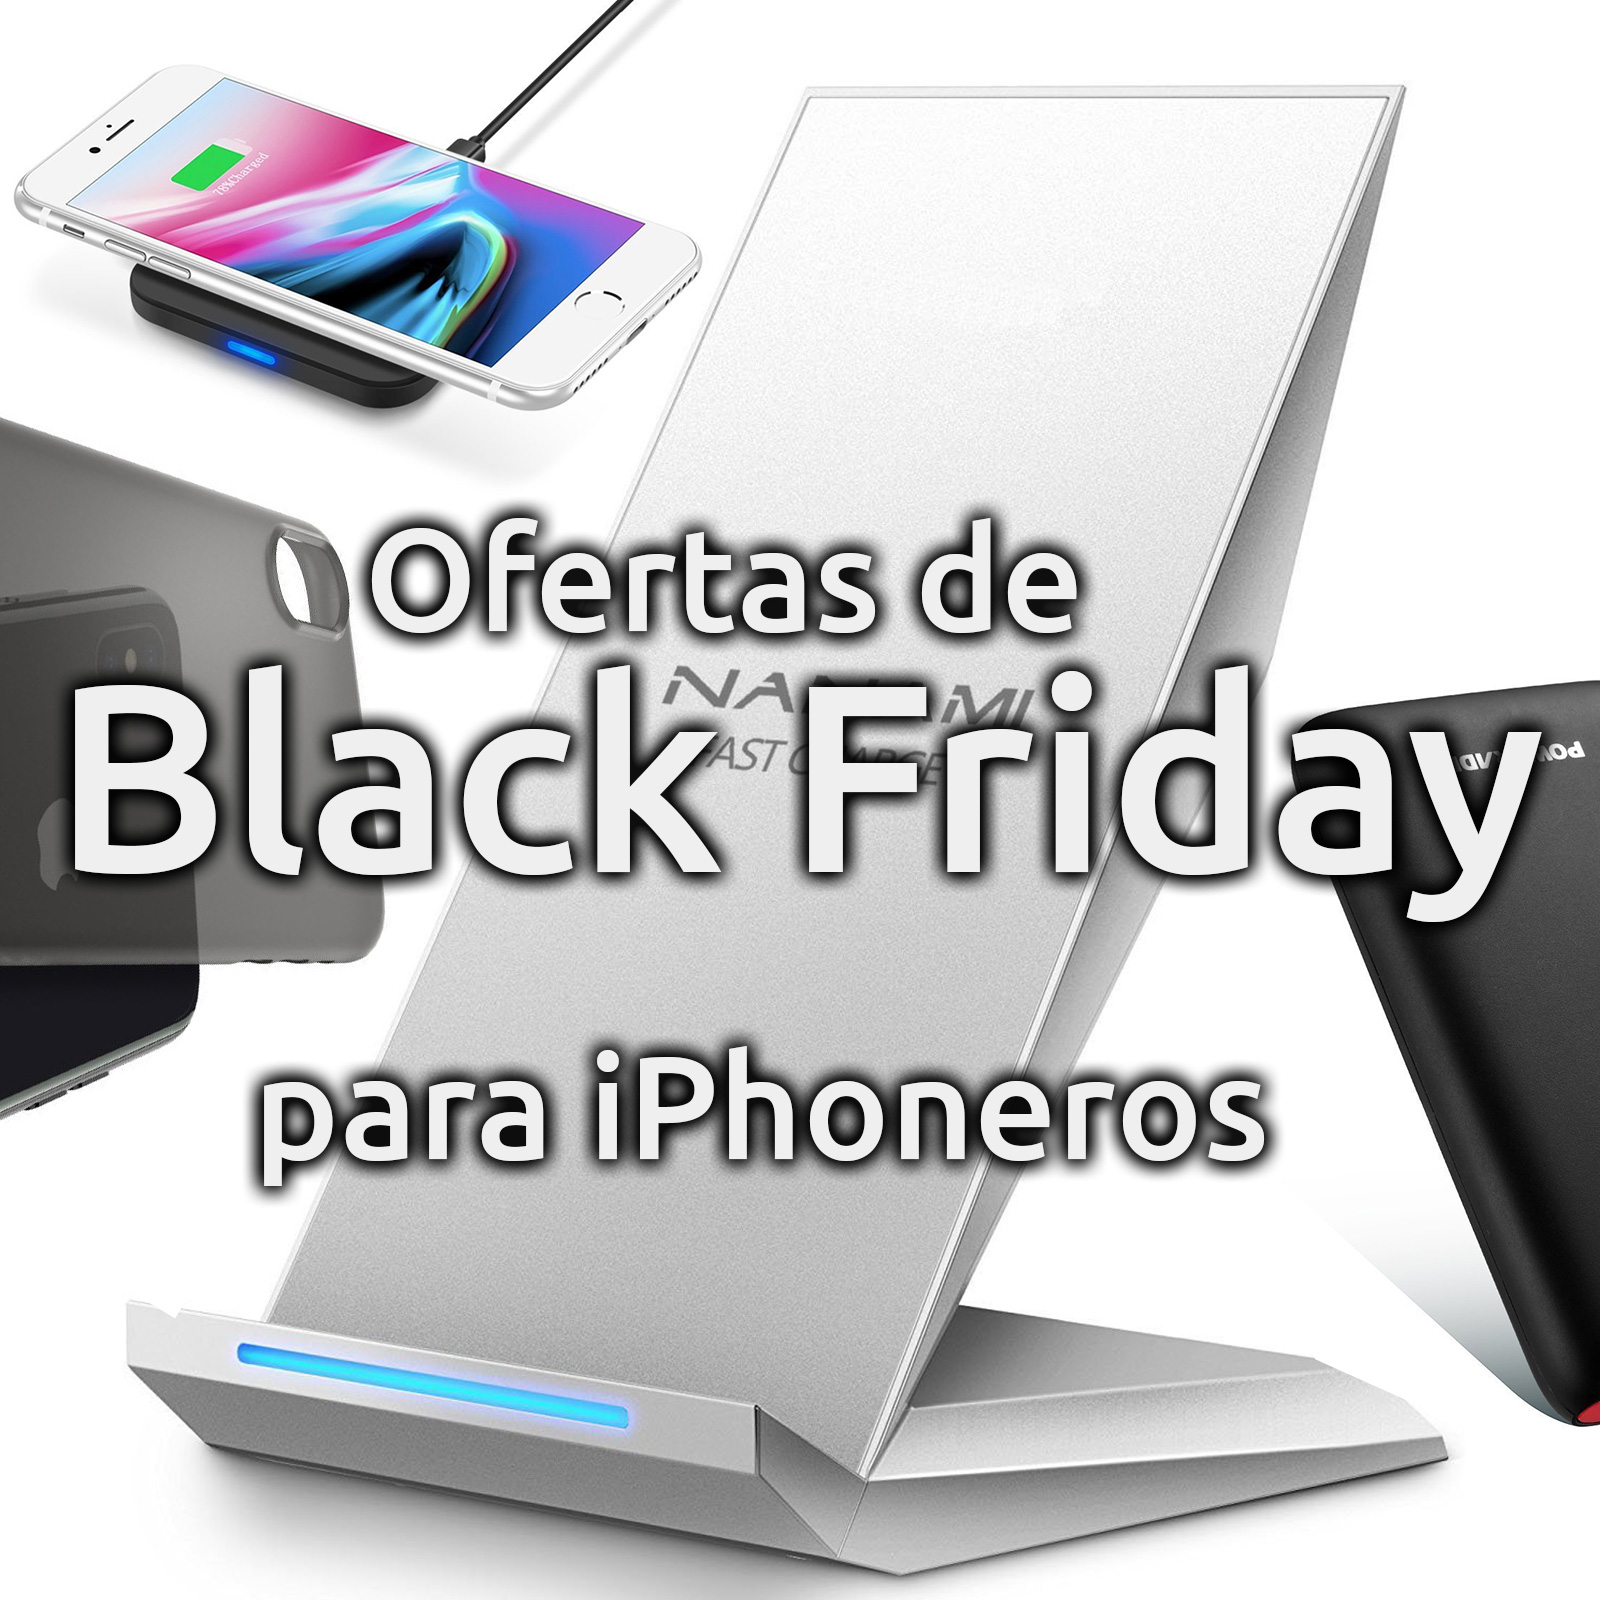 Ofertas de Black Friday para iPhoneros